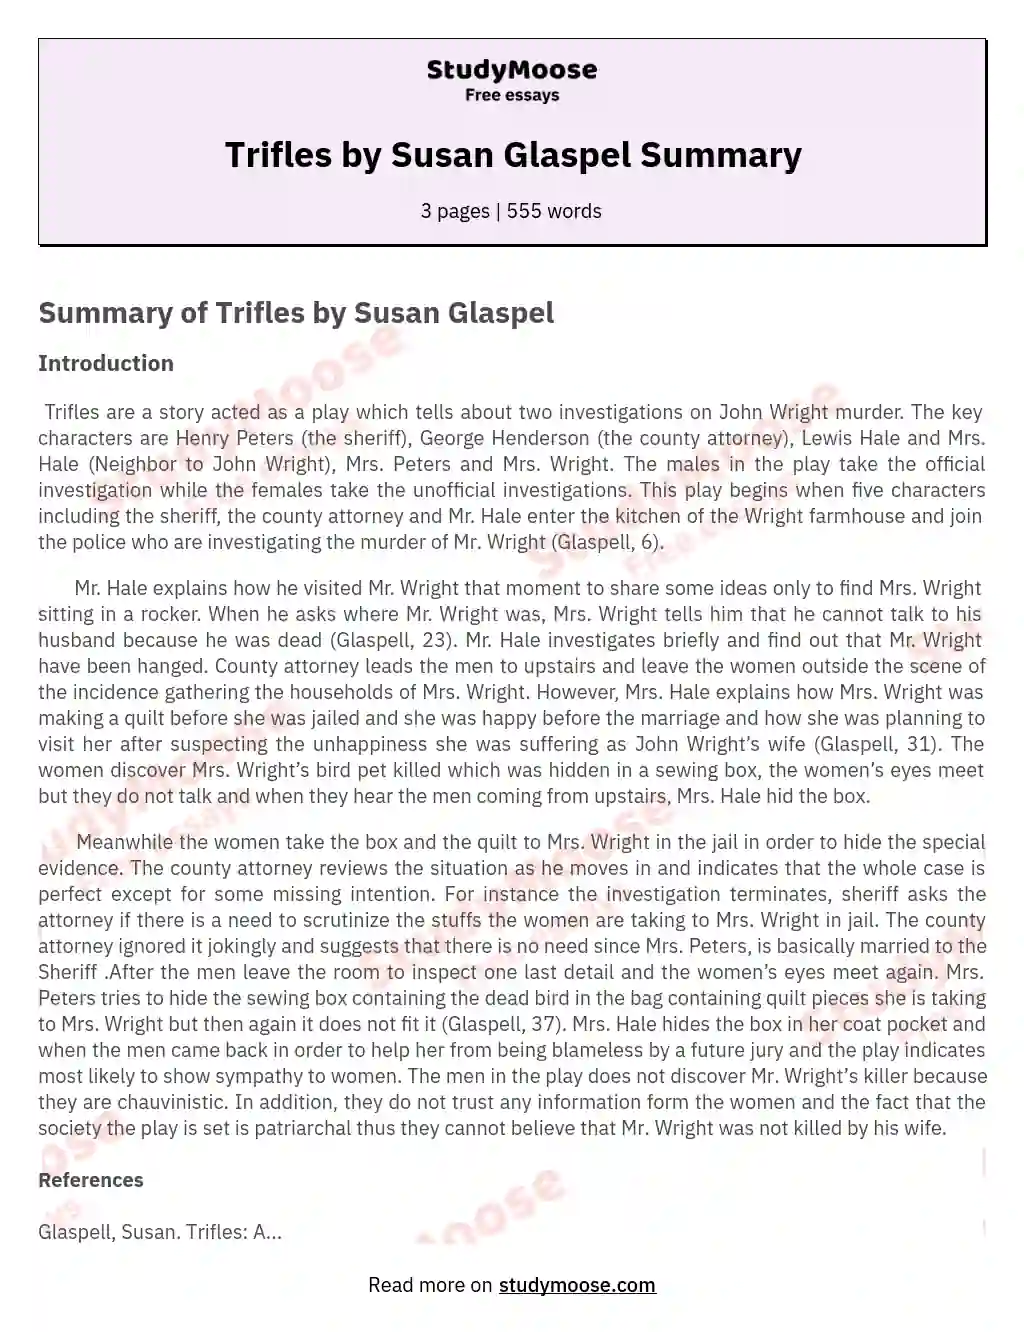 Trifles by Susan Glaspel Summary